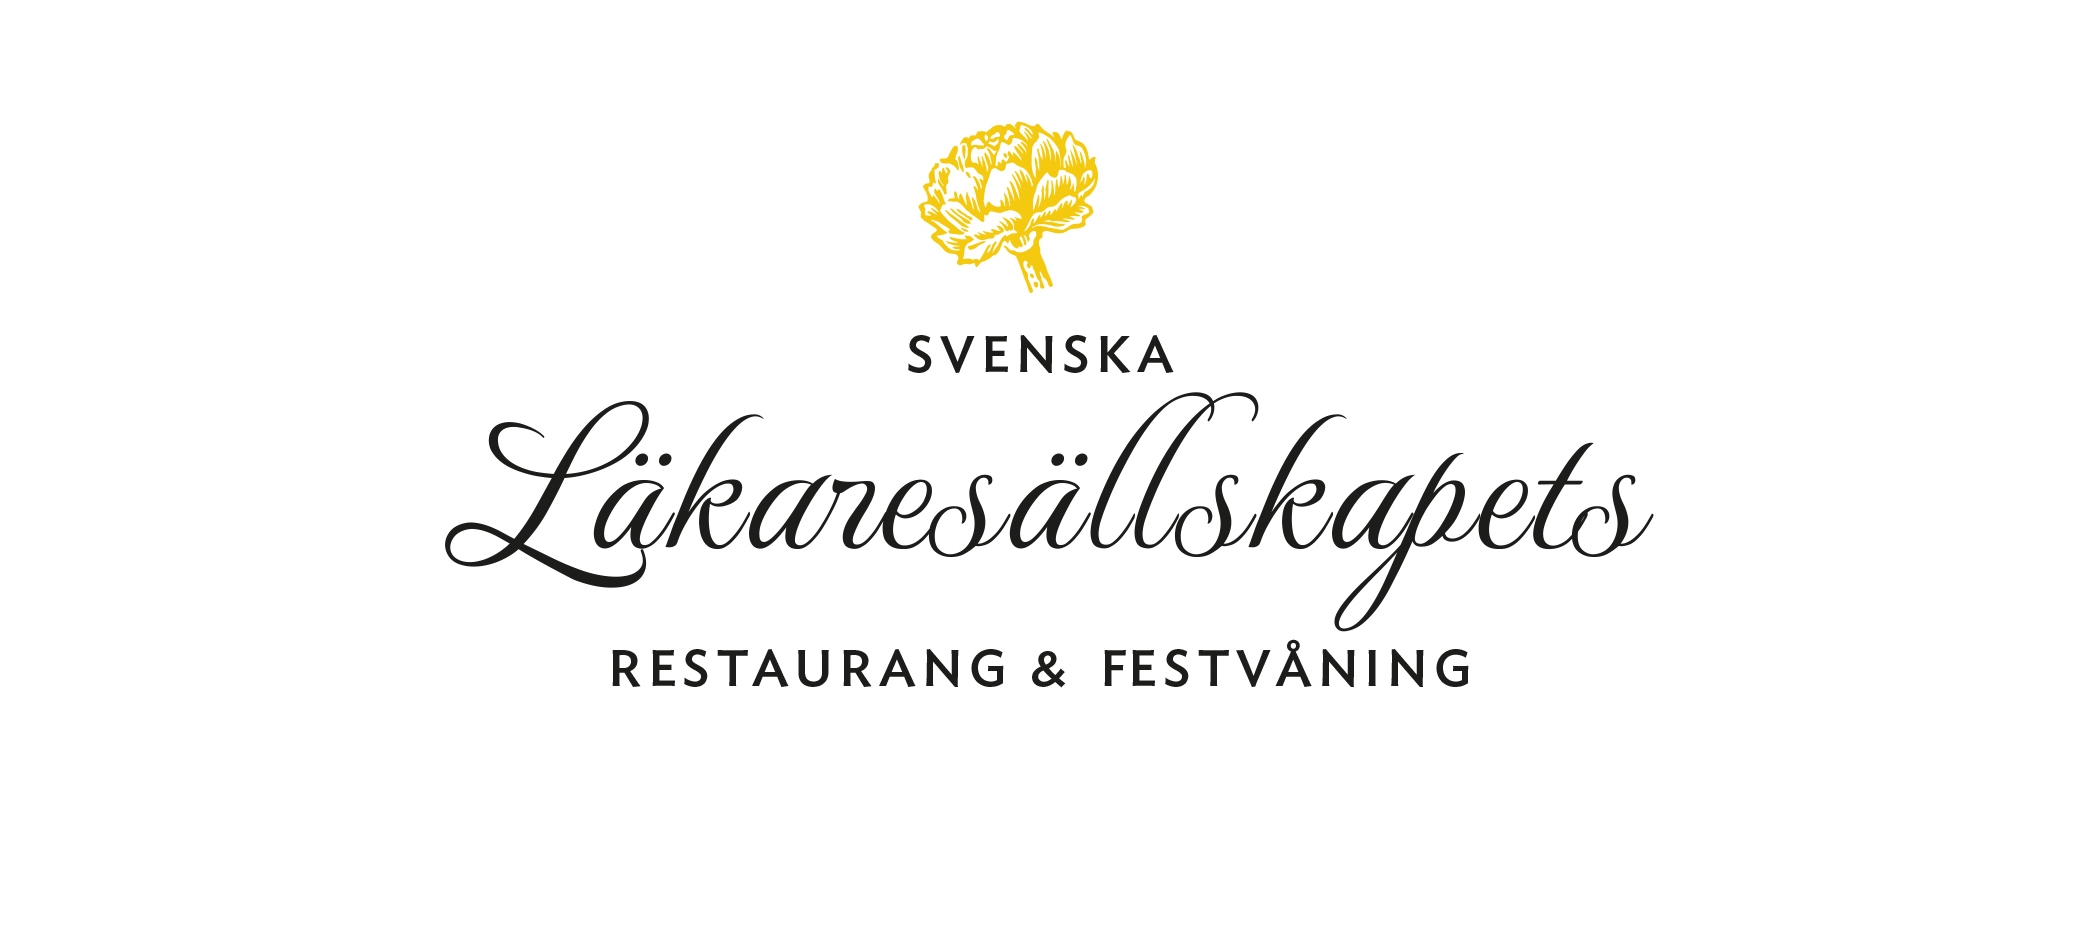 svenska-lakaresallskapet-restaurang-hemsida-logga-webdesign-kontorstryck.jpg